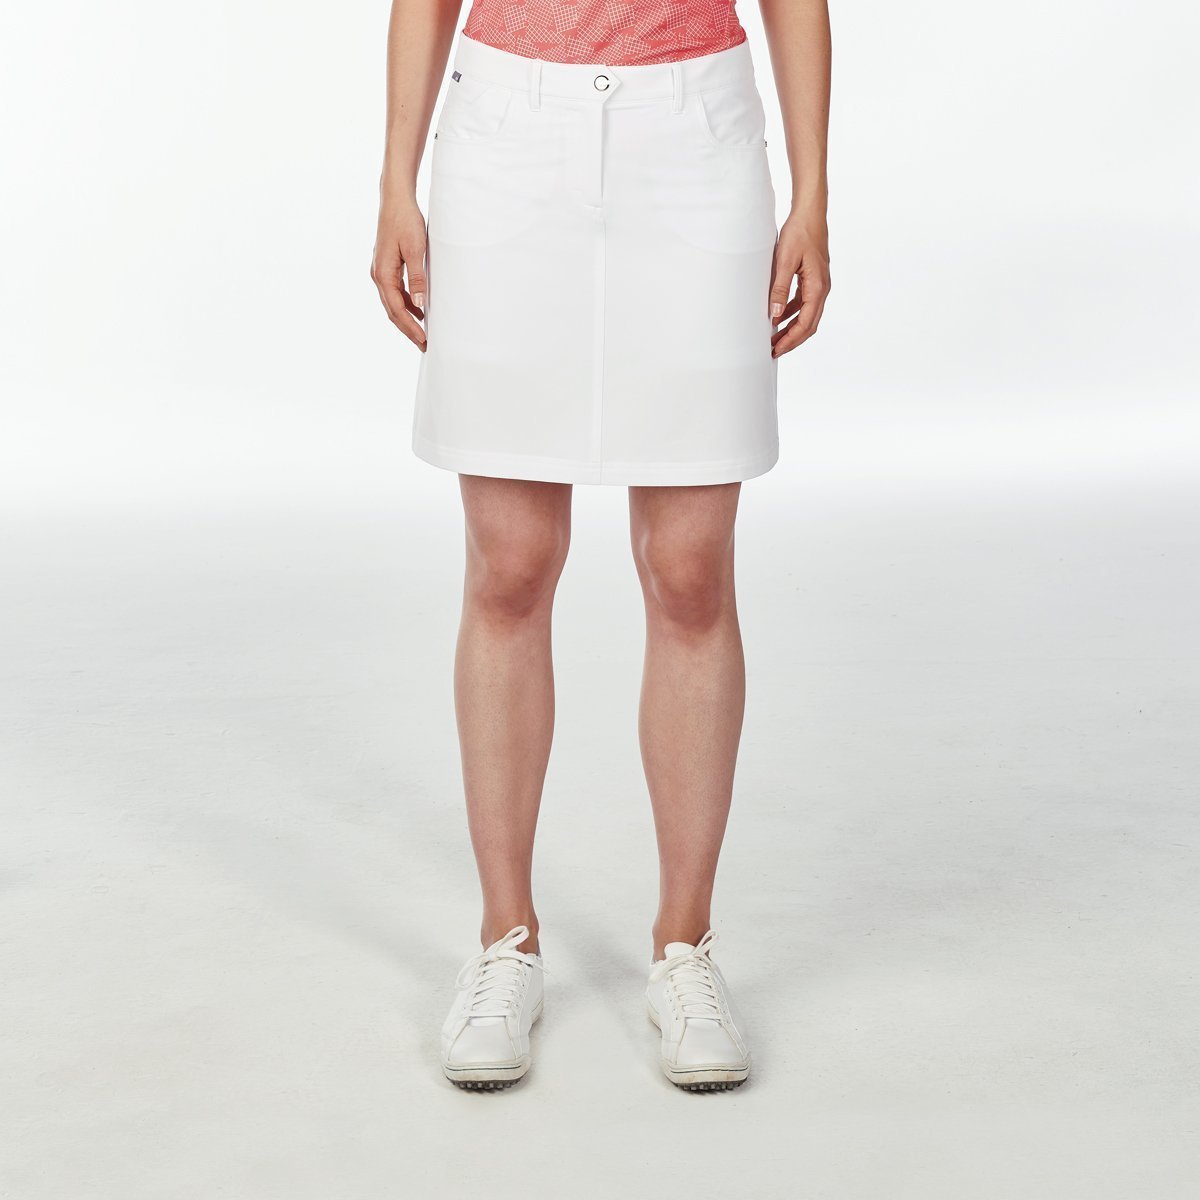 Skirt / Dress Nivo Marika Womens Skort White XS